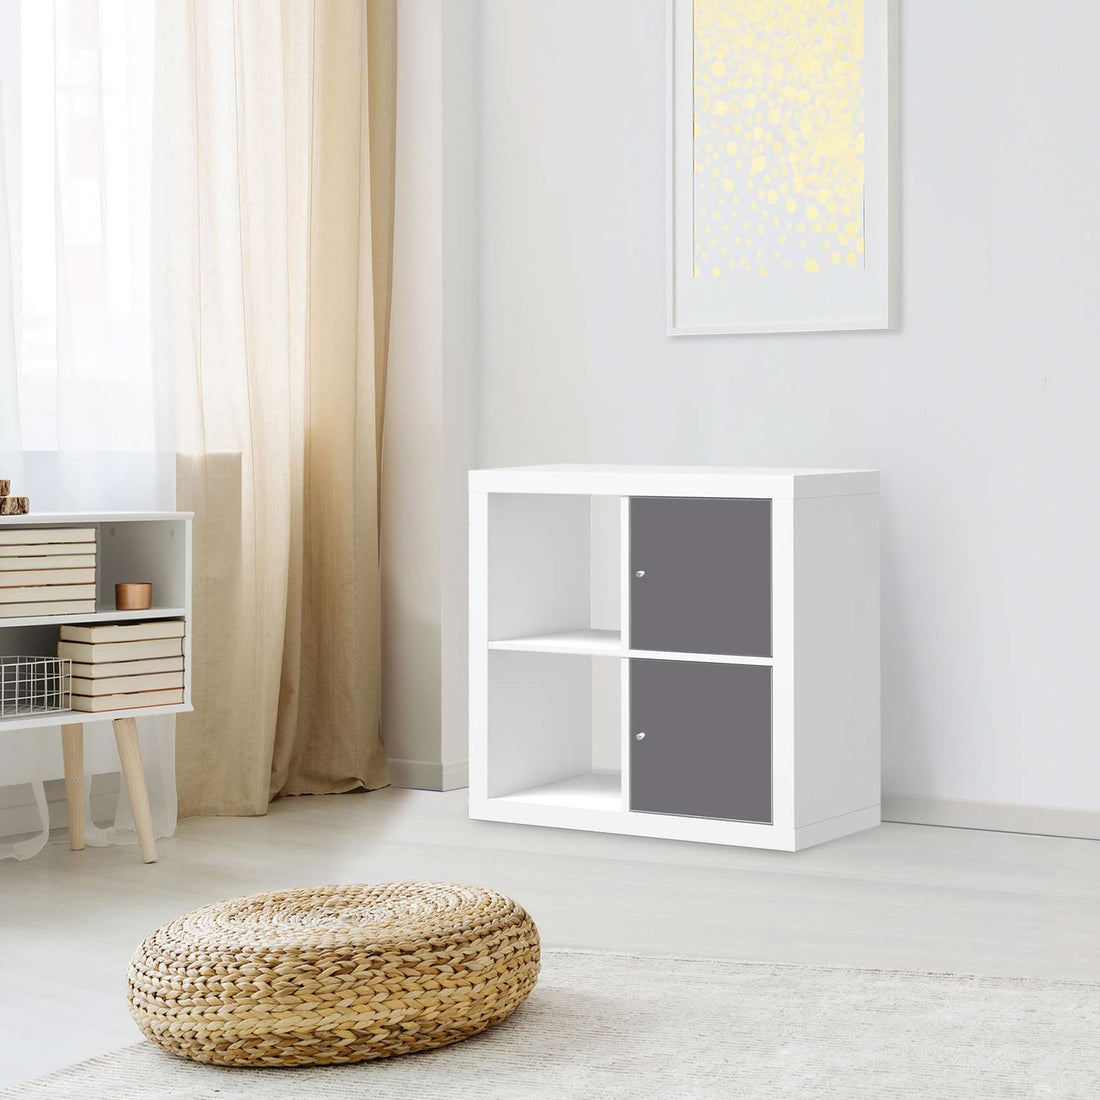 Klebefolie für Möbel Grau Light - IKEA Expedit Regal 2 Türen Hoch - Wohnzimmer